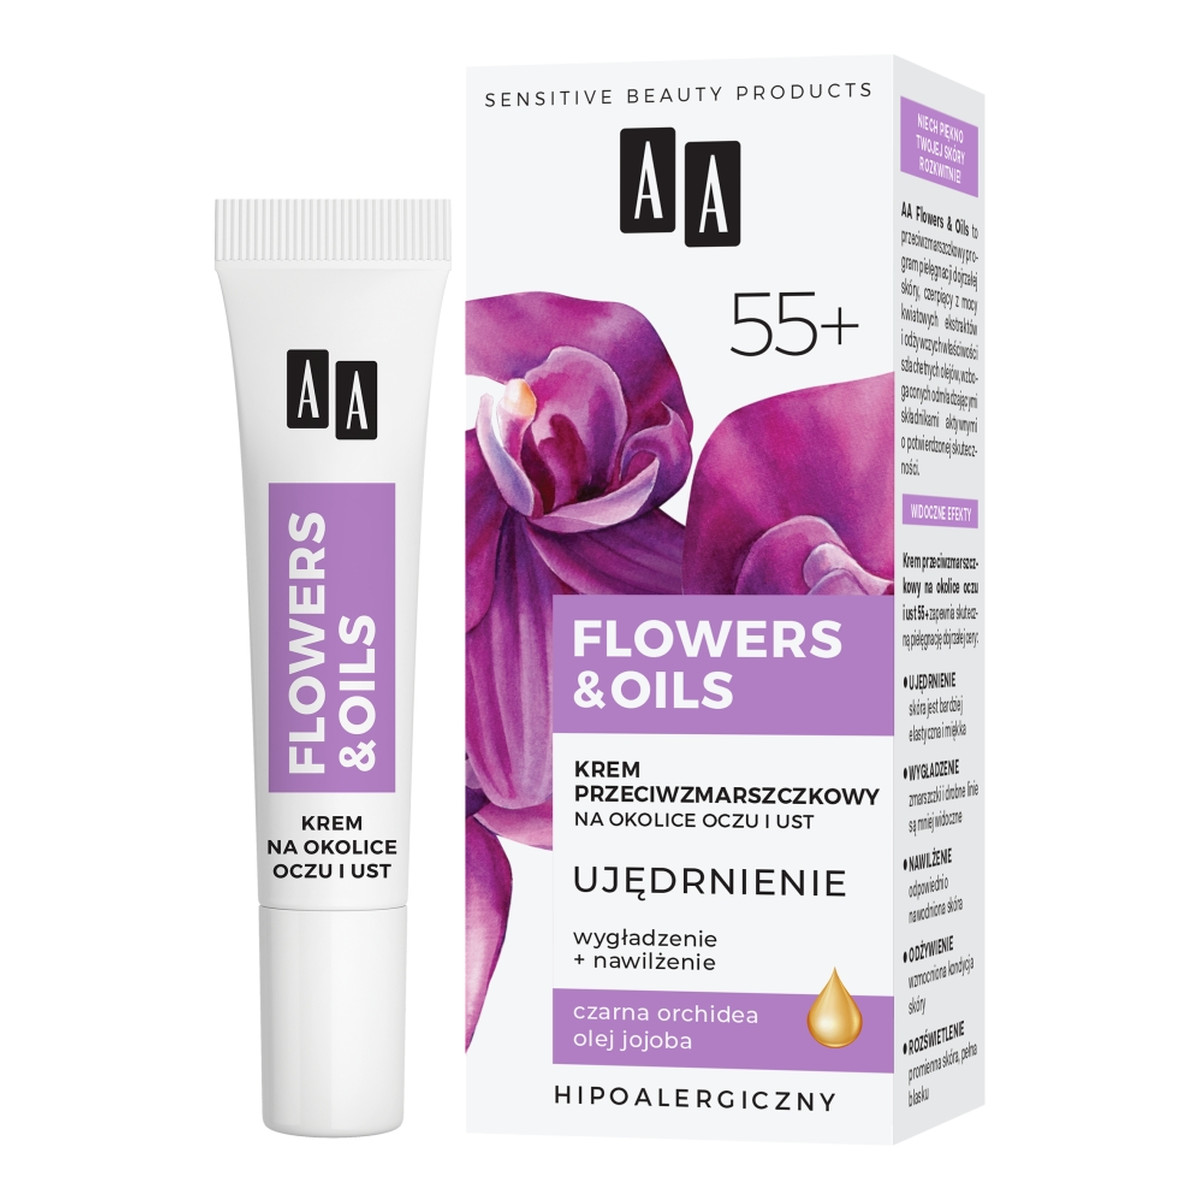 AA Flowers & Oils Krem przeciwzmarszczkowy na okolice oczu i ust - ujędrnienie 55+ 15ml